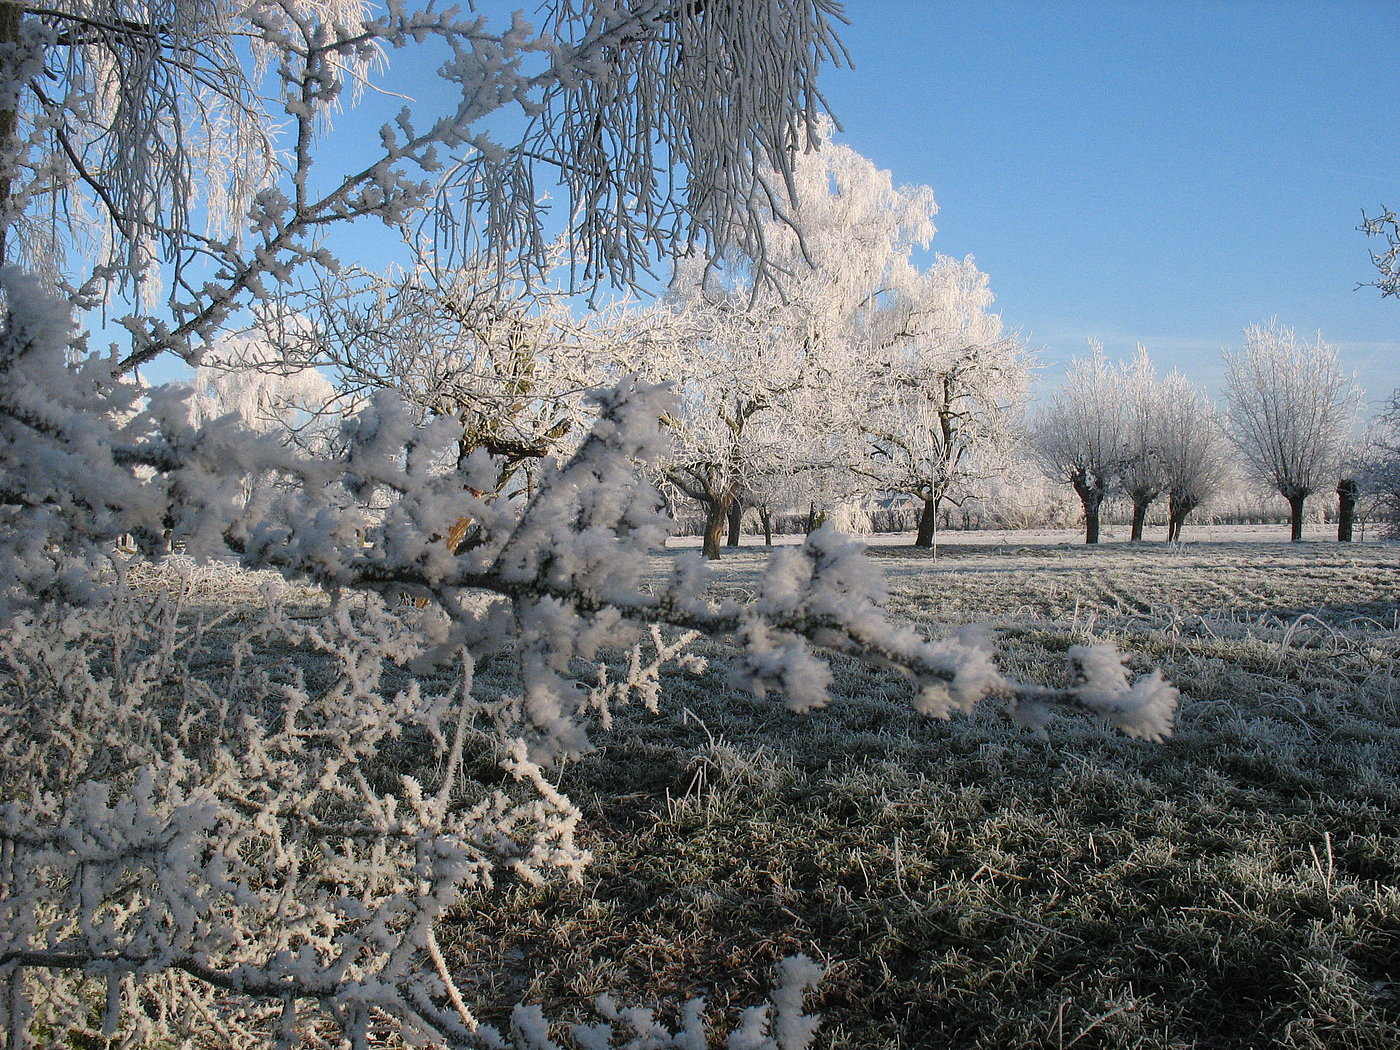 Lopikerhout in de winter